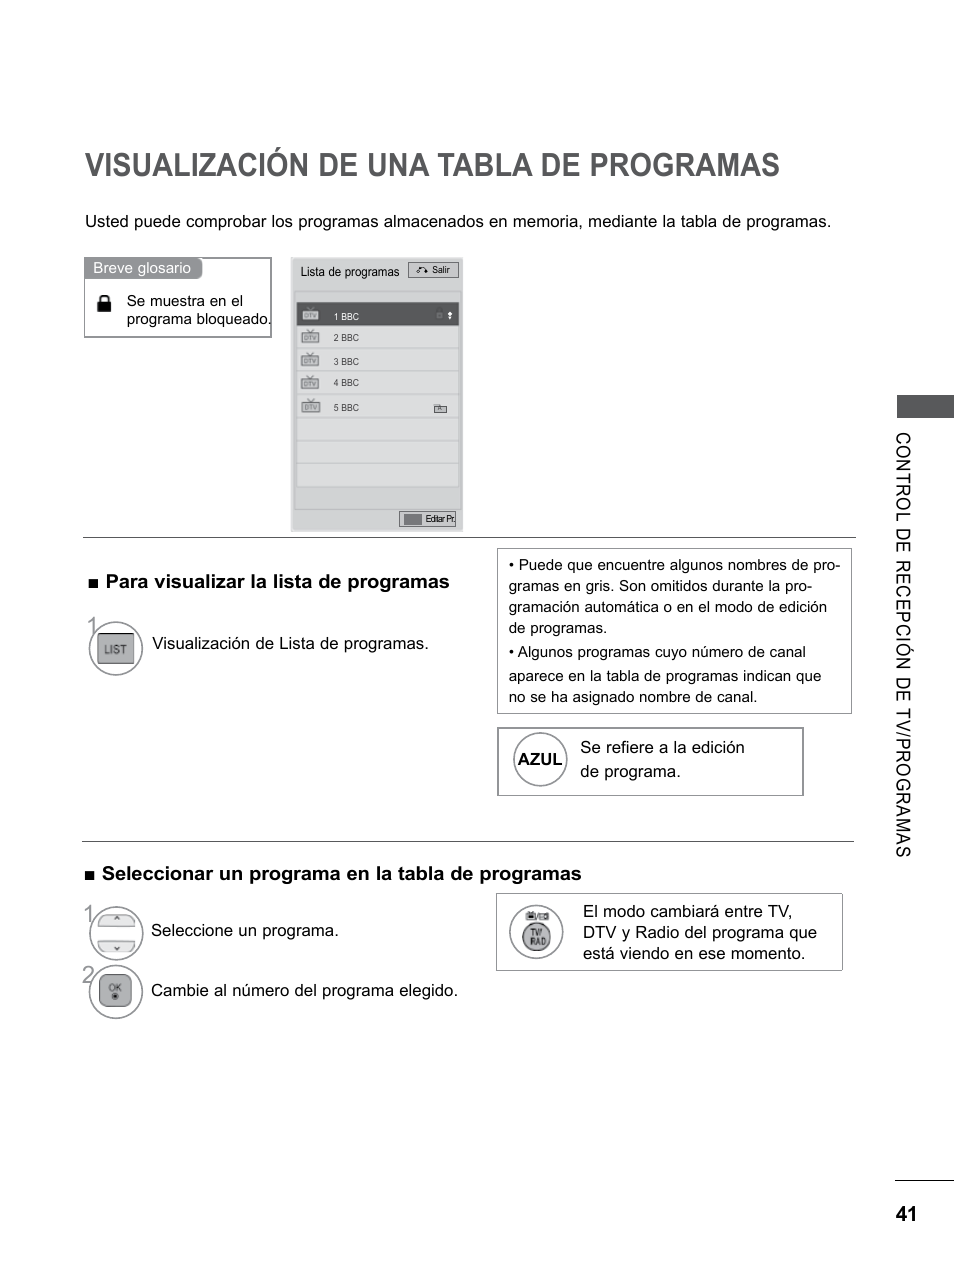 Visualización de una tabla de programas, Visualización de una tabla de, Programas | LG 26LD350 Manual del usuario | Página 89 / 206